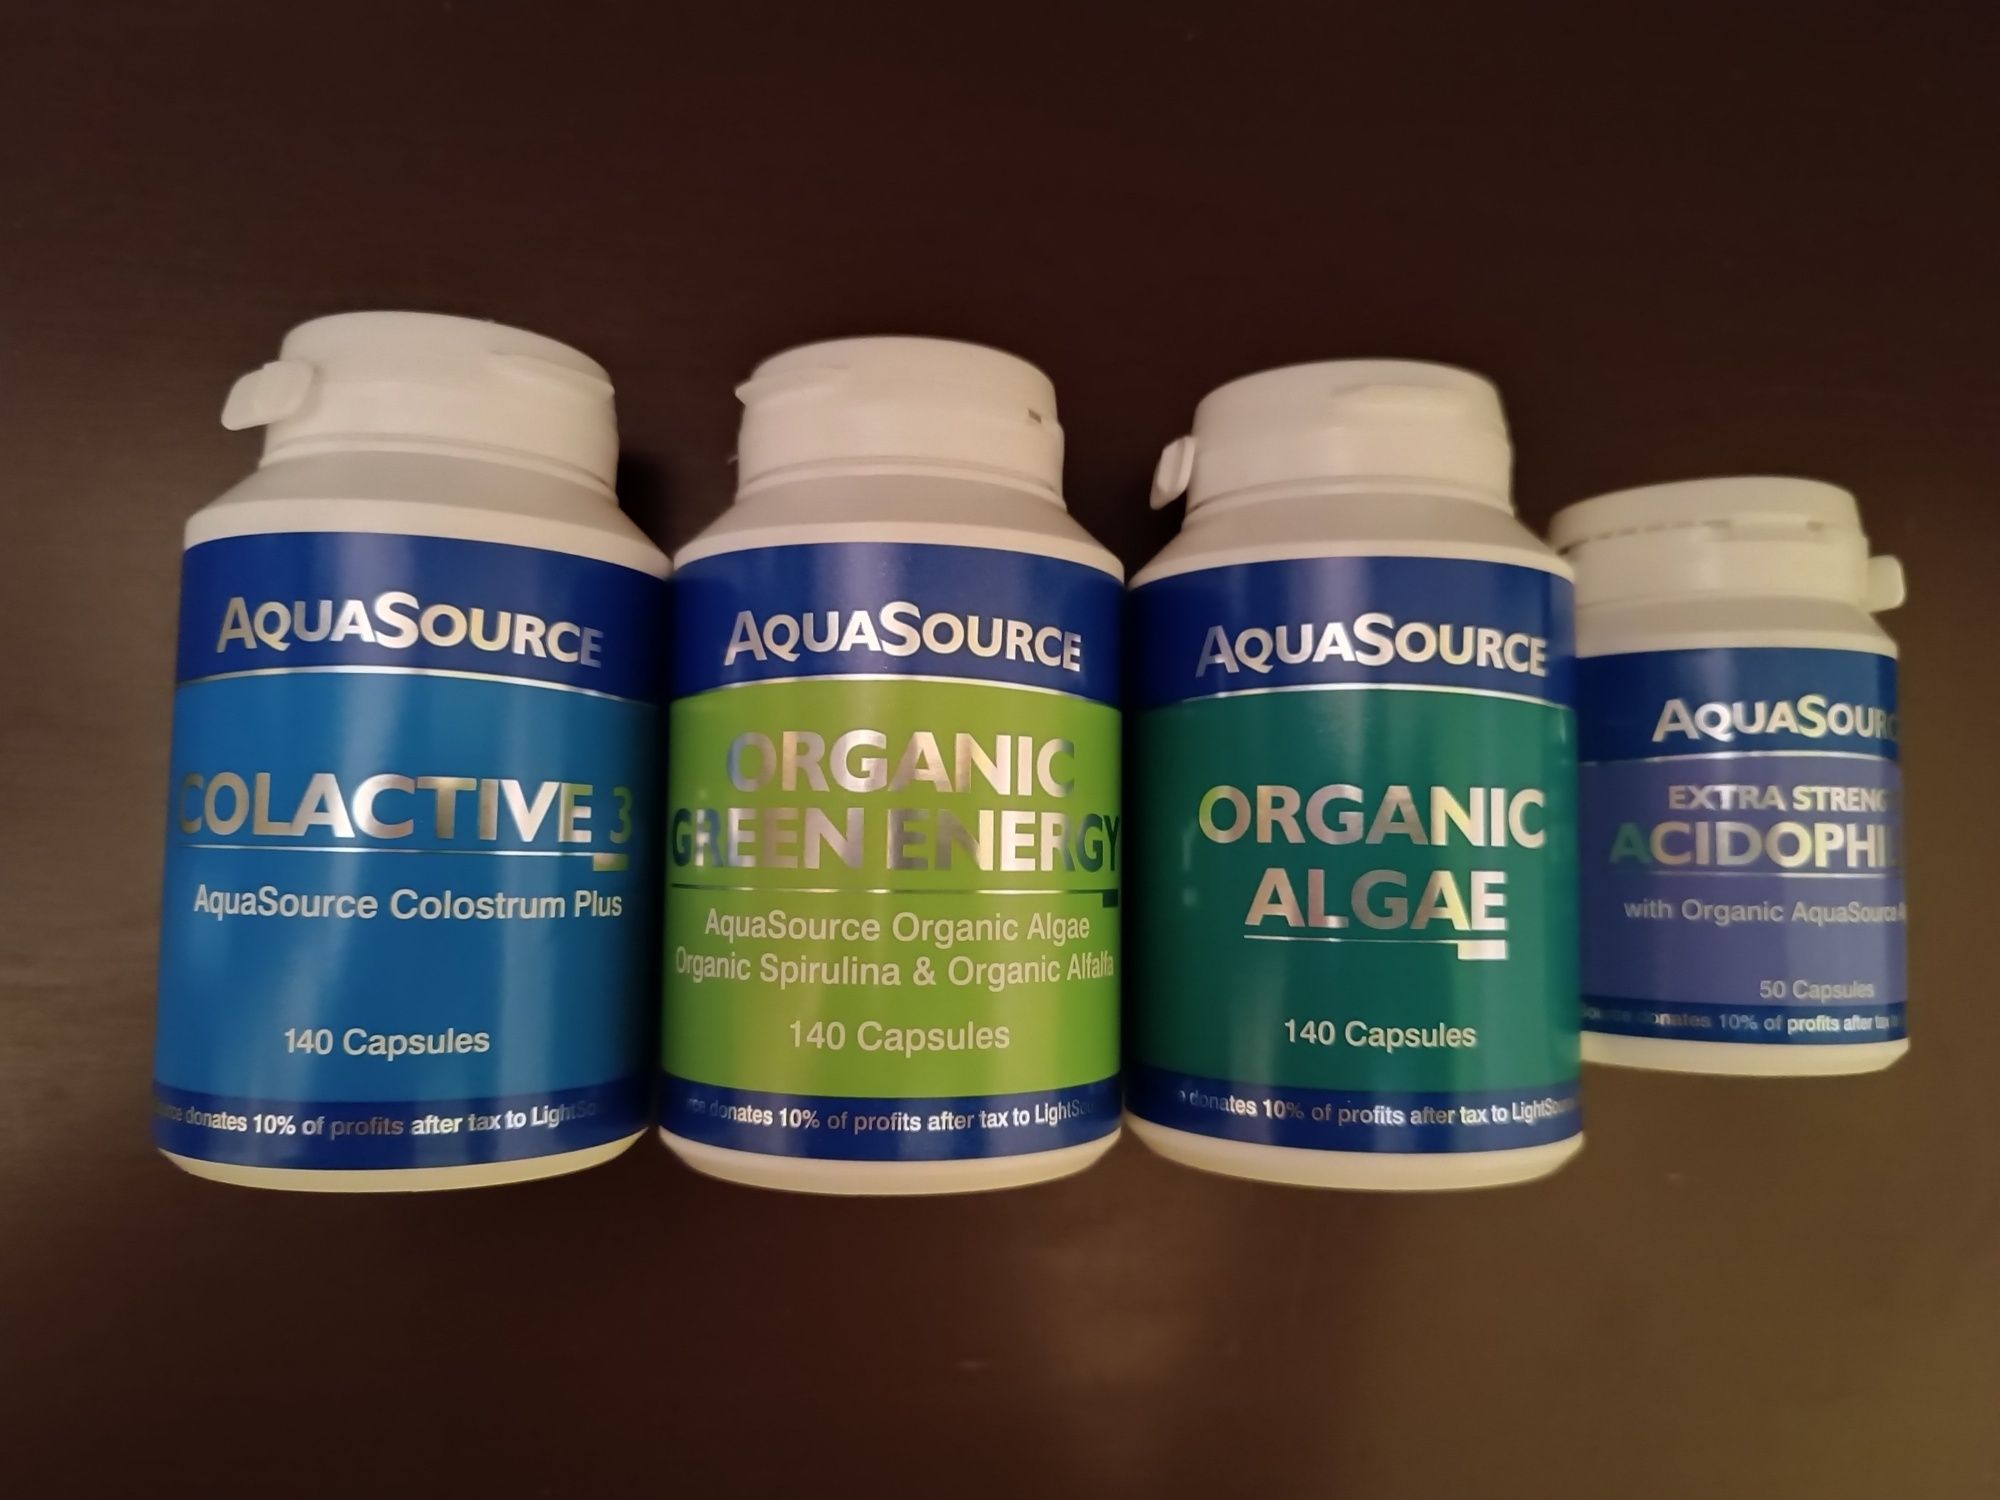 Aquasource хранителни добавки